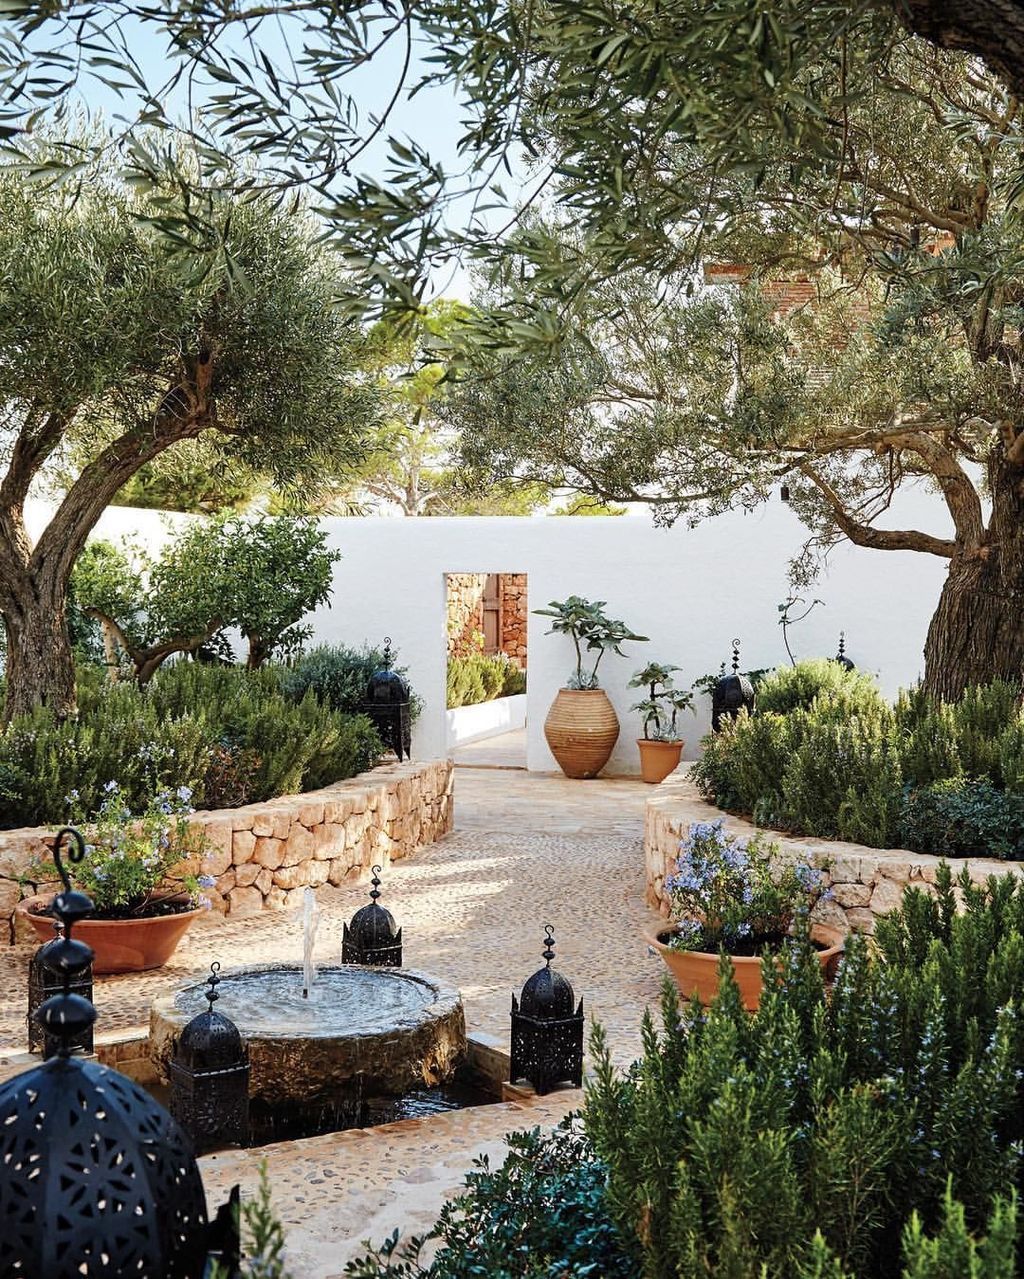 36 The Best Mediterranean Garden Design Ideas -   12 garden design Mediterranean backyards ideas